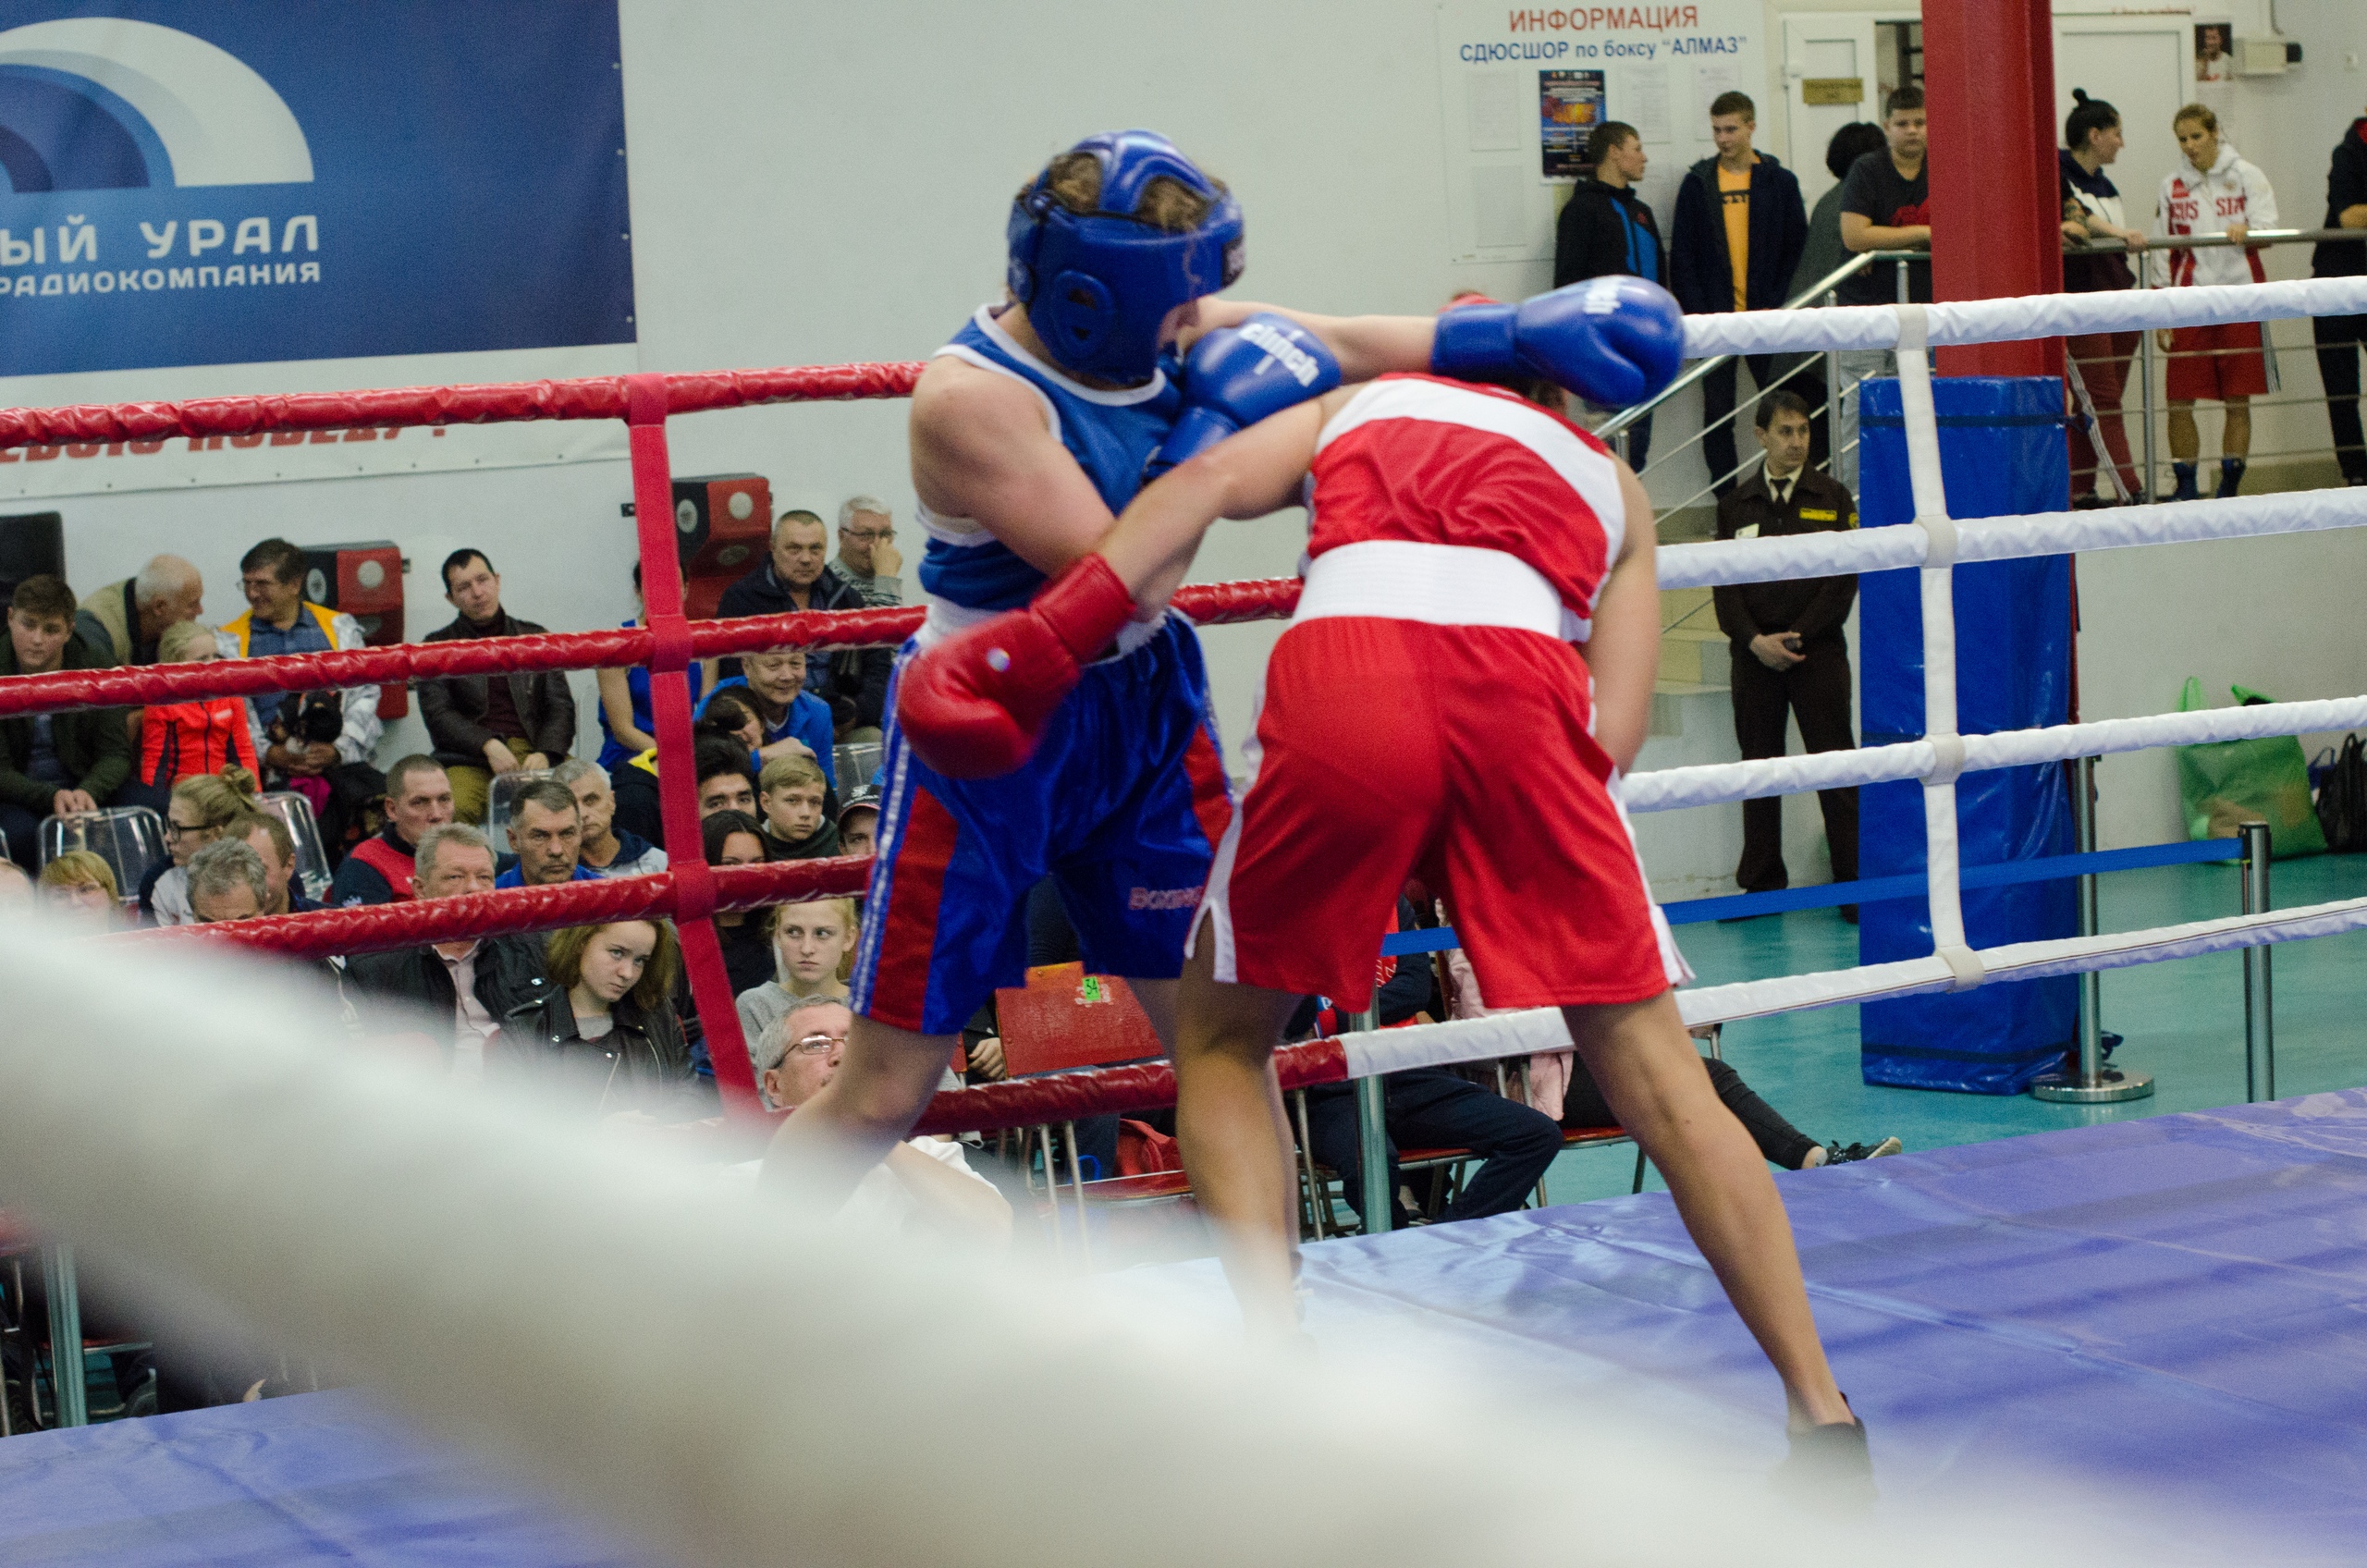 Сводки с ринга: в Челябинске проходит турнир по боксу среди женщин 